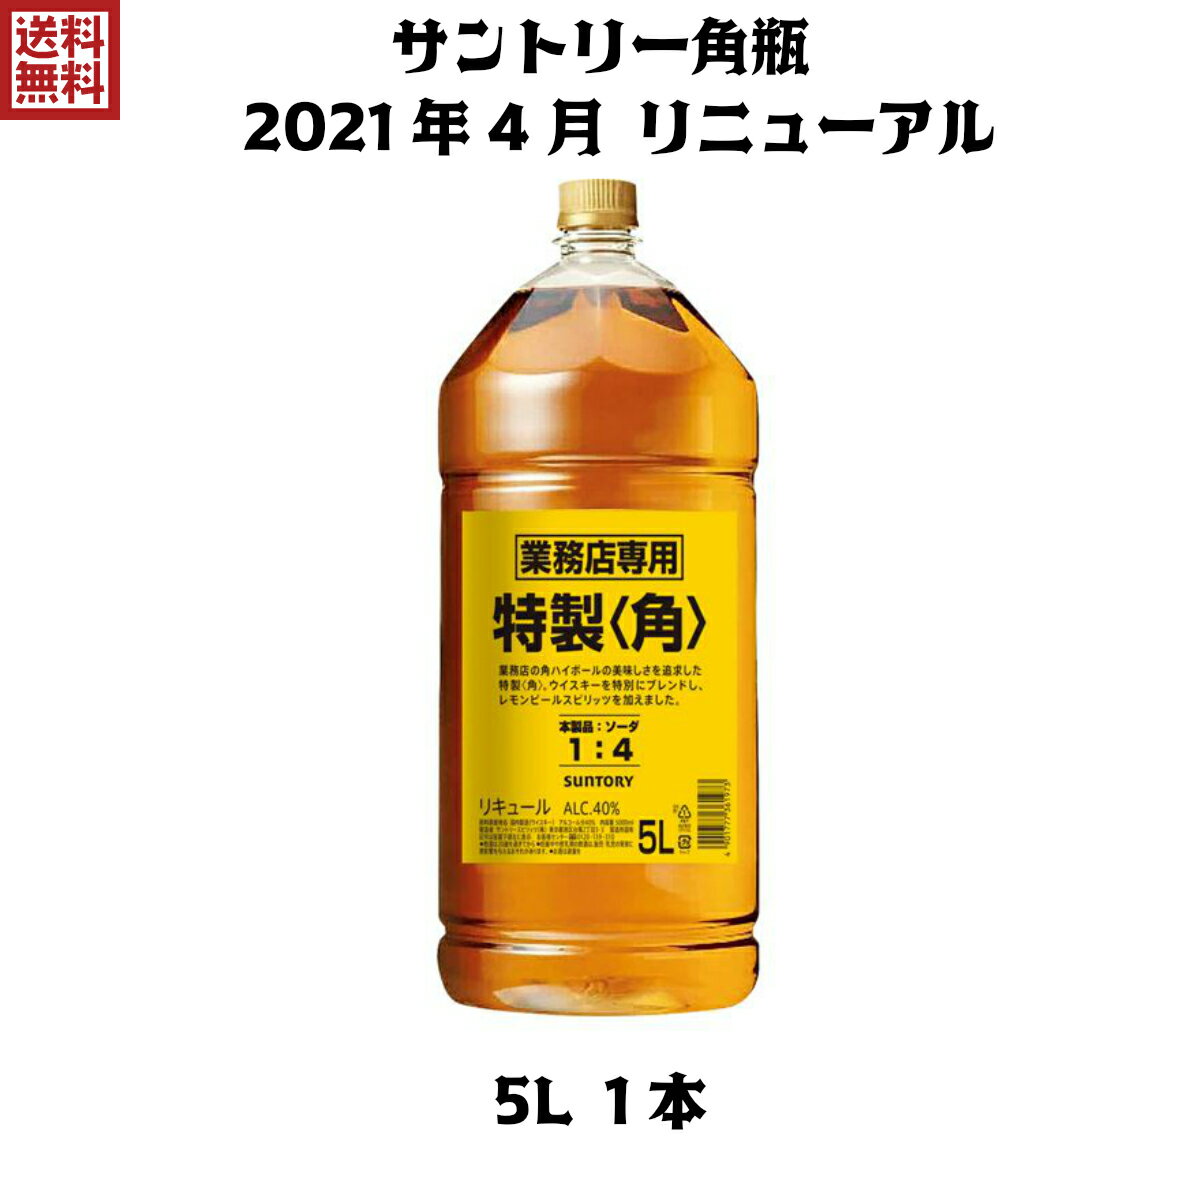 送料無料 角 5L 1本 角瓶 サントリー 特製 ペット ウイスキー ウィスキー 業務用 40度 【2021年新ラベ..